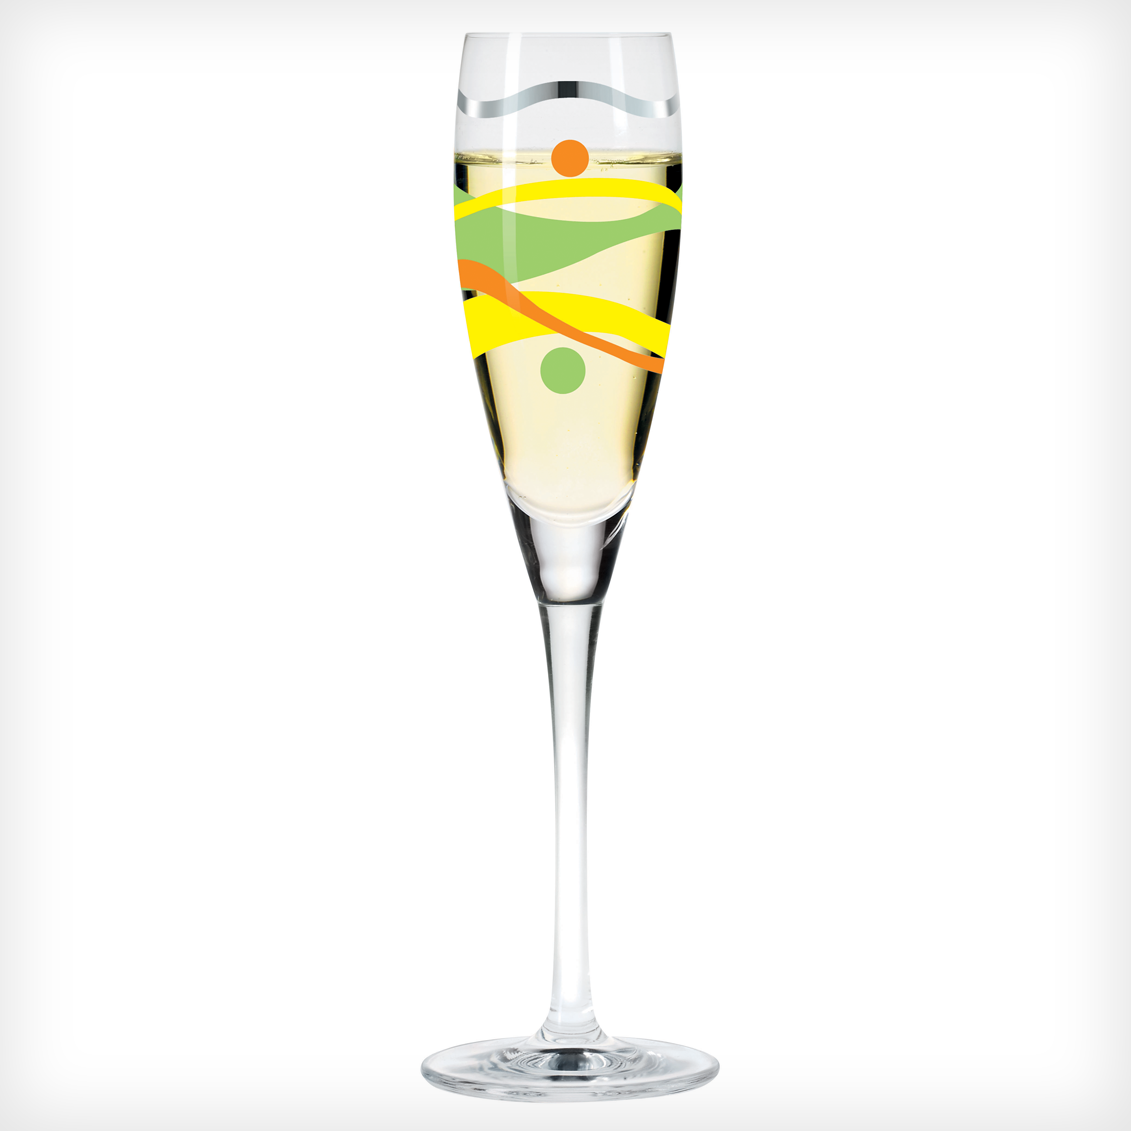 “Summer Fun” Prosecco Glass for Ritzenhoff